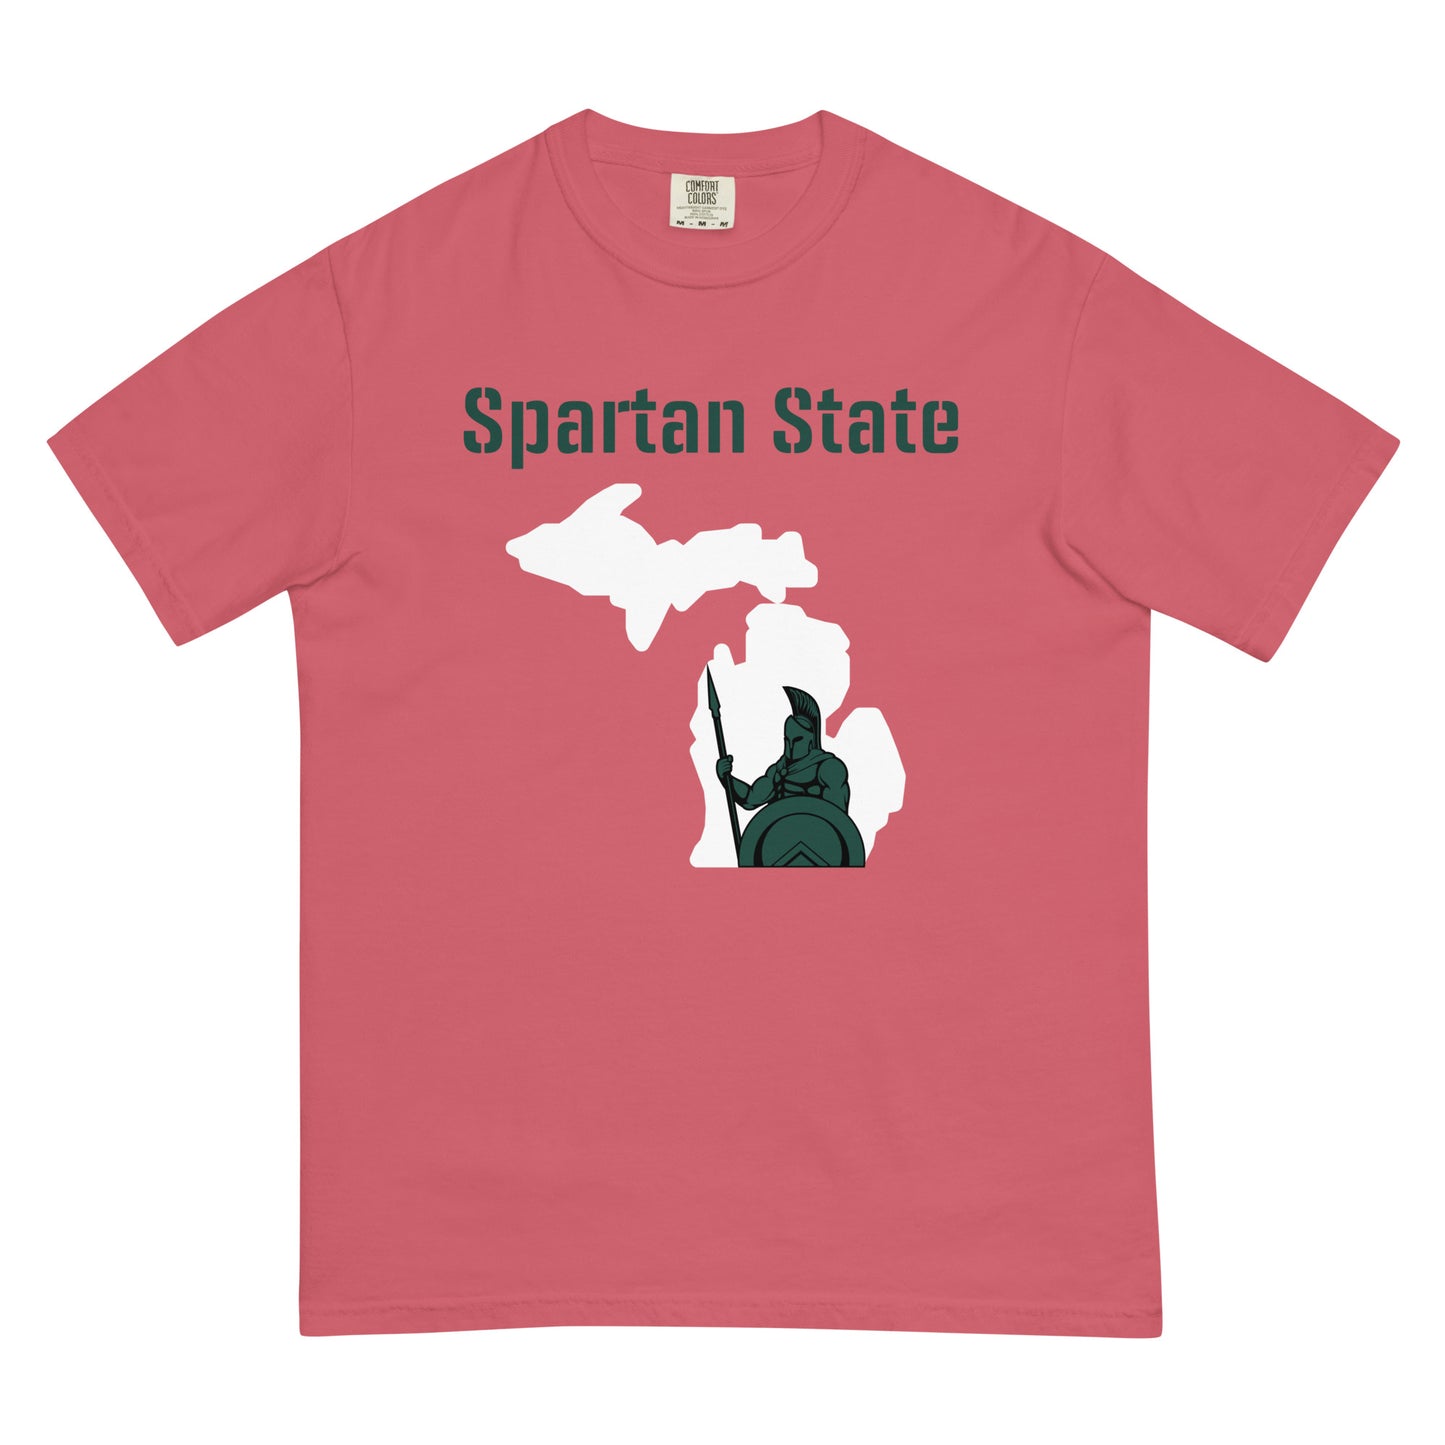 Spartan State Men’s garment-dyed heavyweight t-shirt